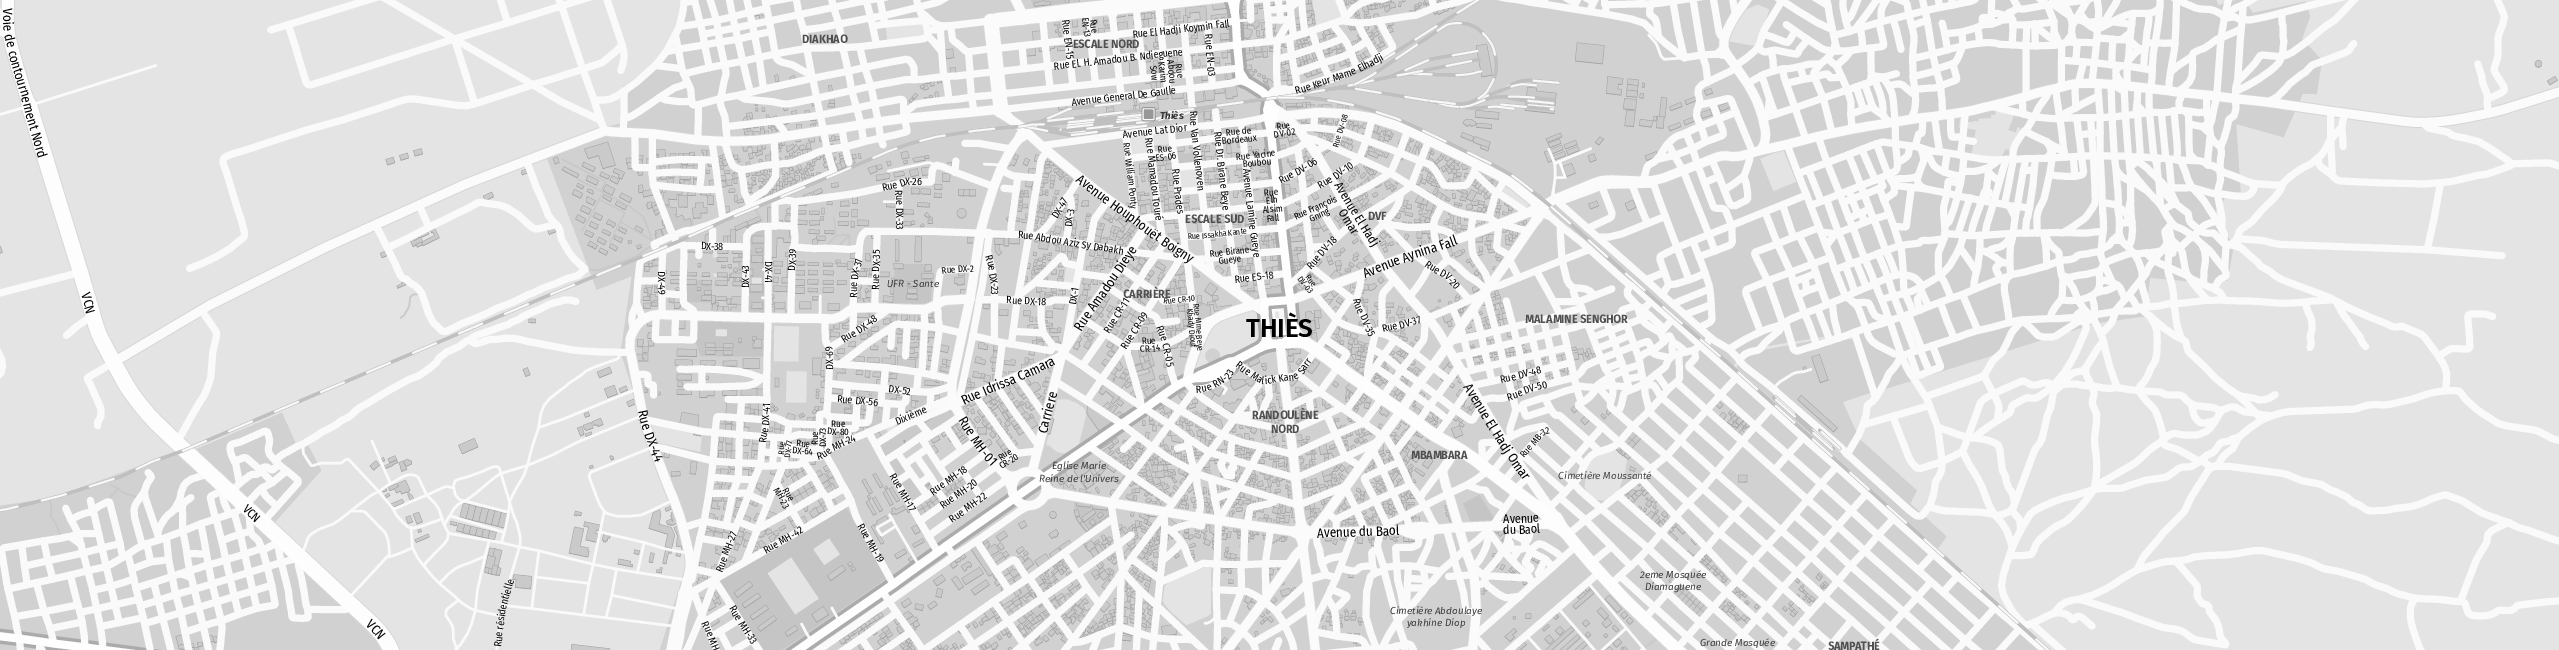 Stadtplan Thiès zum Downloaden.